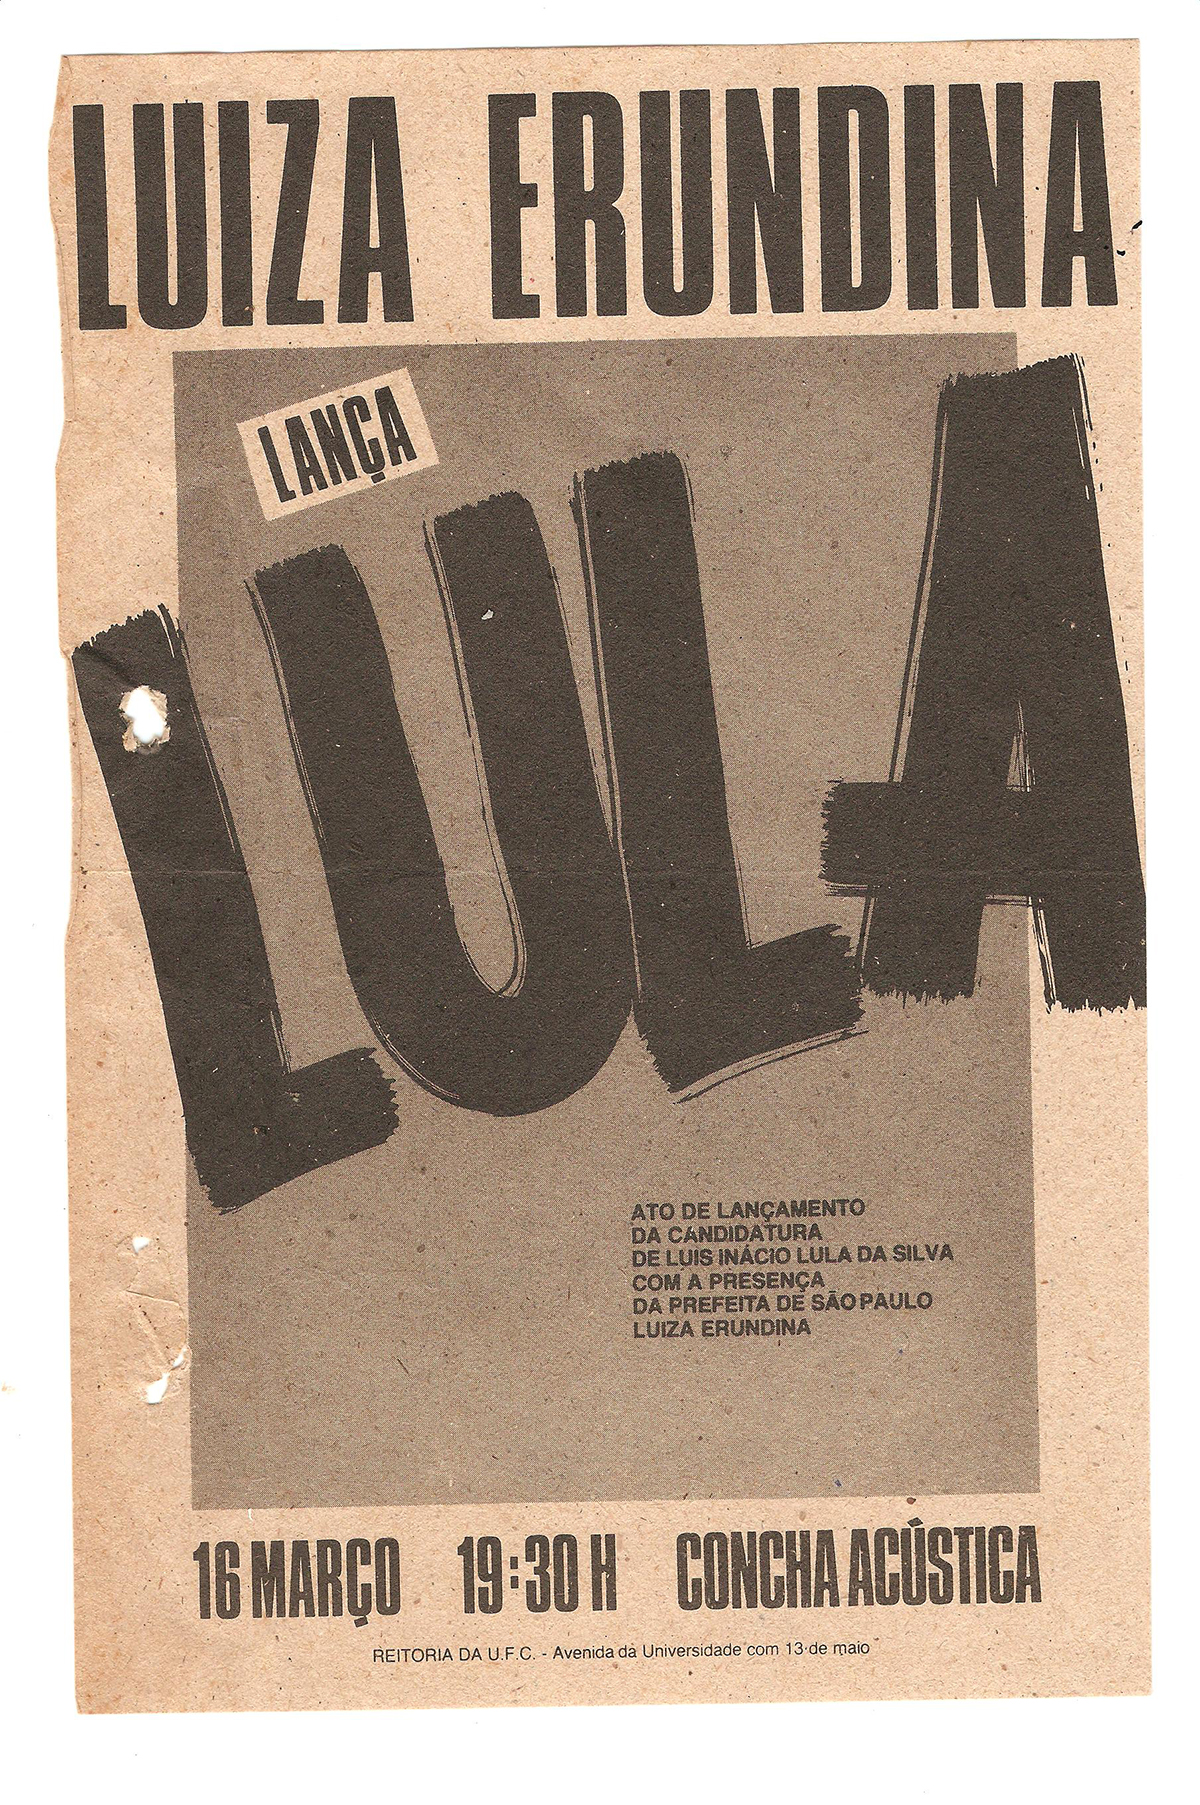 Panfleto de lançamento da candidatura de Lula na Concha Acústica da Reitoria, 1989. O ato contaria com a presença da primeira prefeita de São Paulo, eleita em 1988, Luiza Erundina.